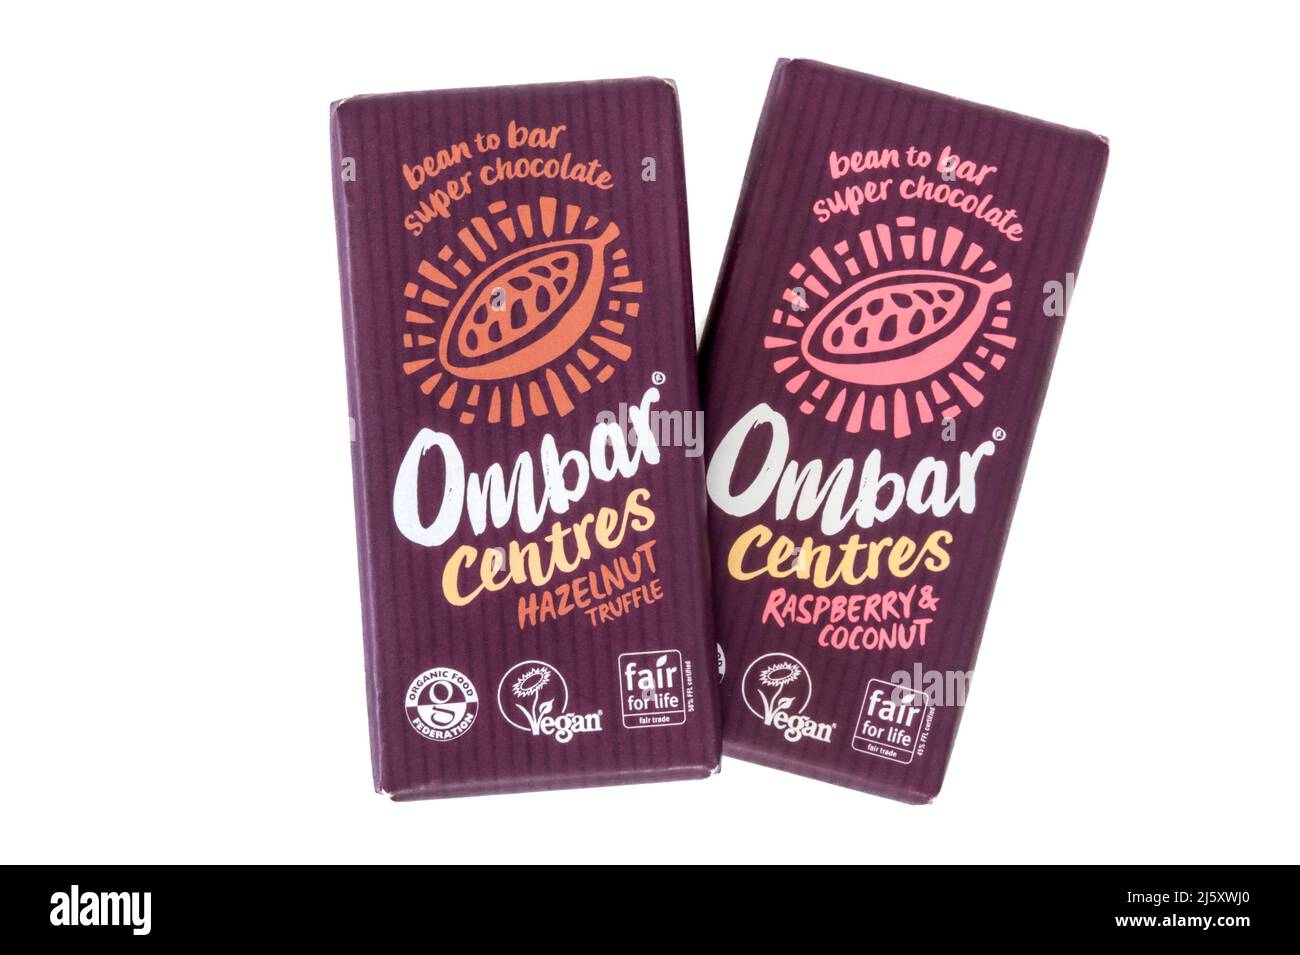 Les centres Ombar sont des barres de chocolat végétalien aromatisées à la truffe aux noisettes et aux framboises et à la noix de coco. Banque D'Images